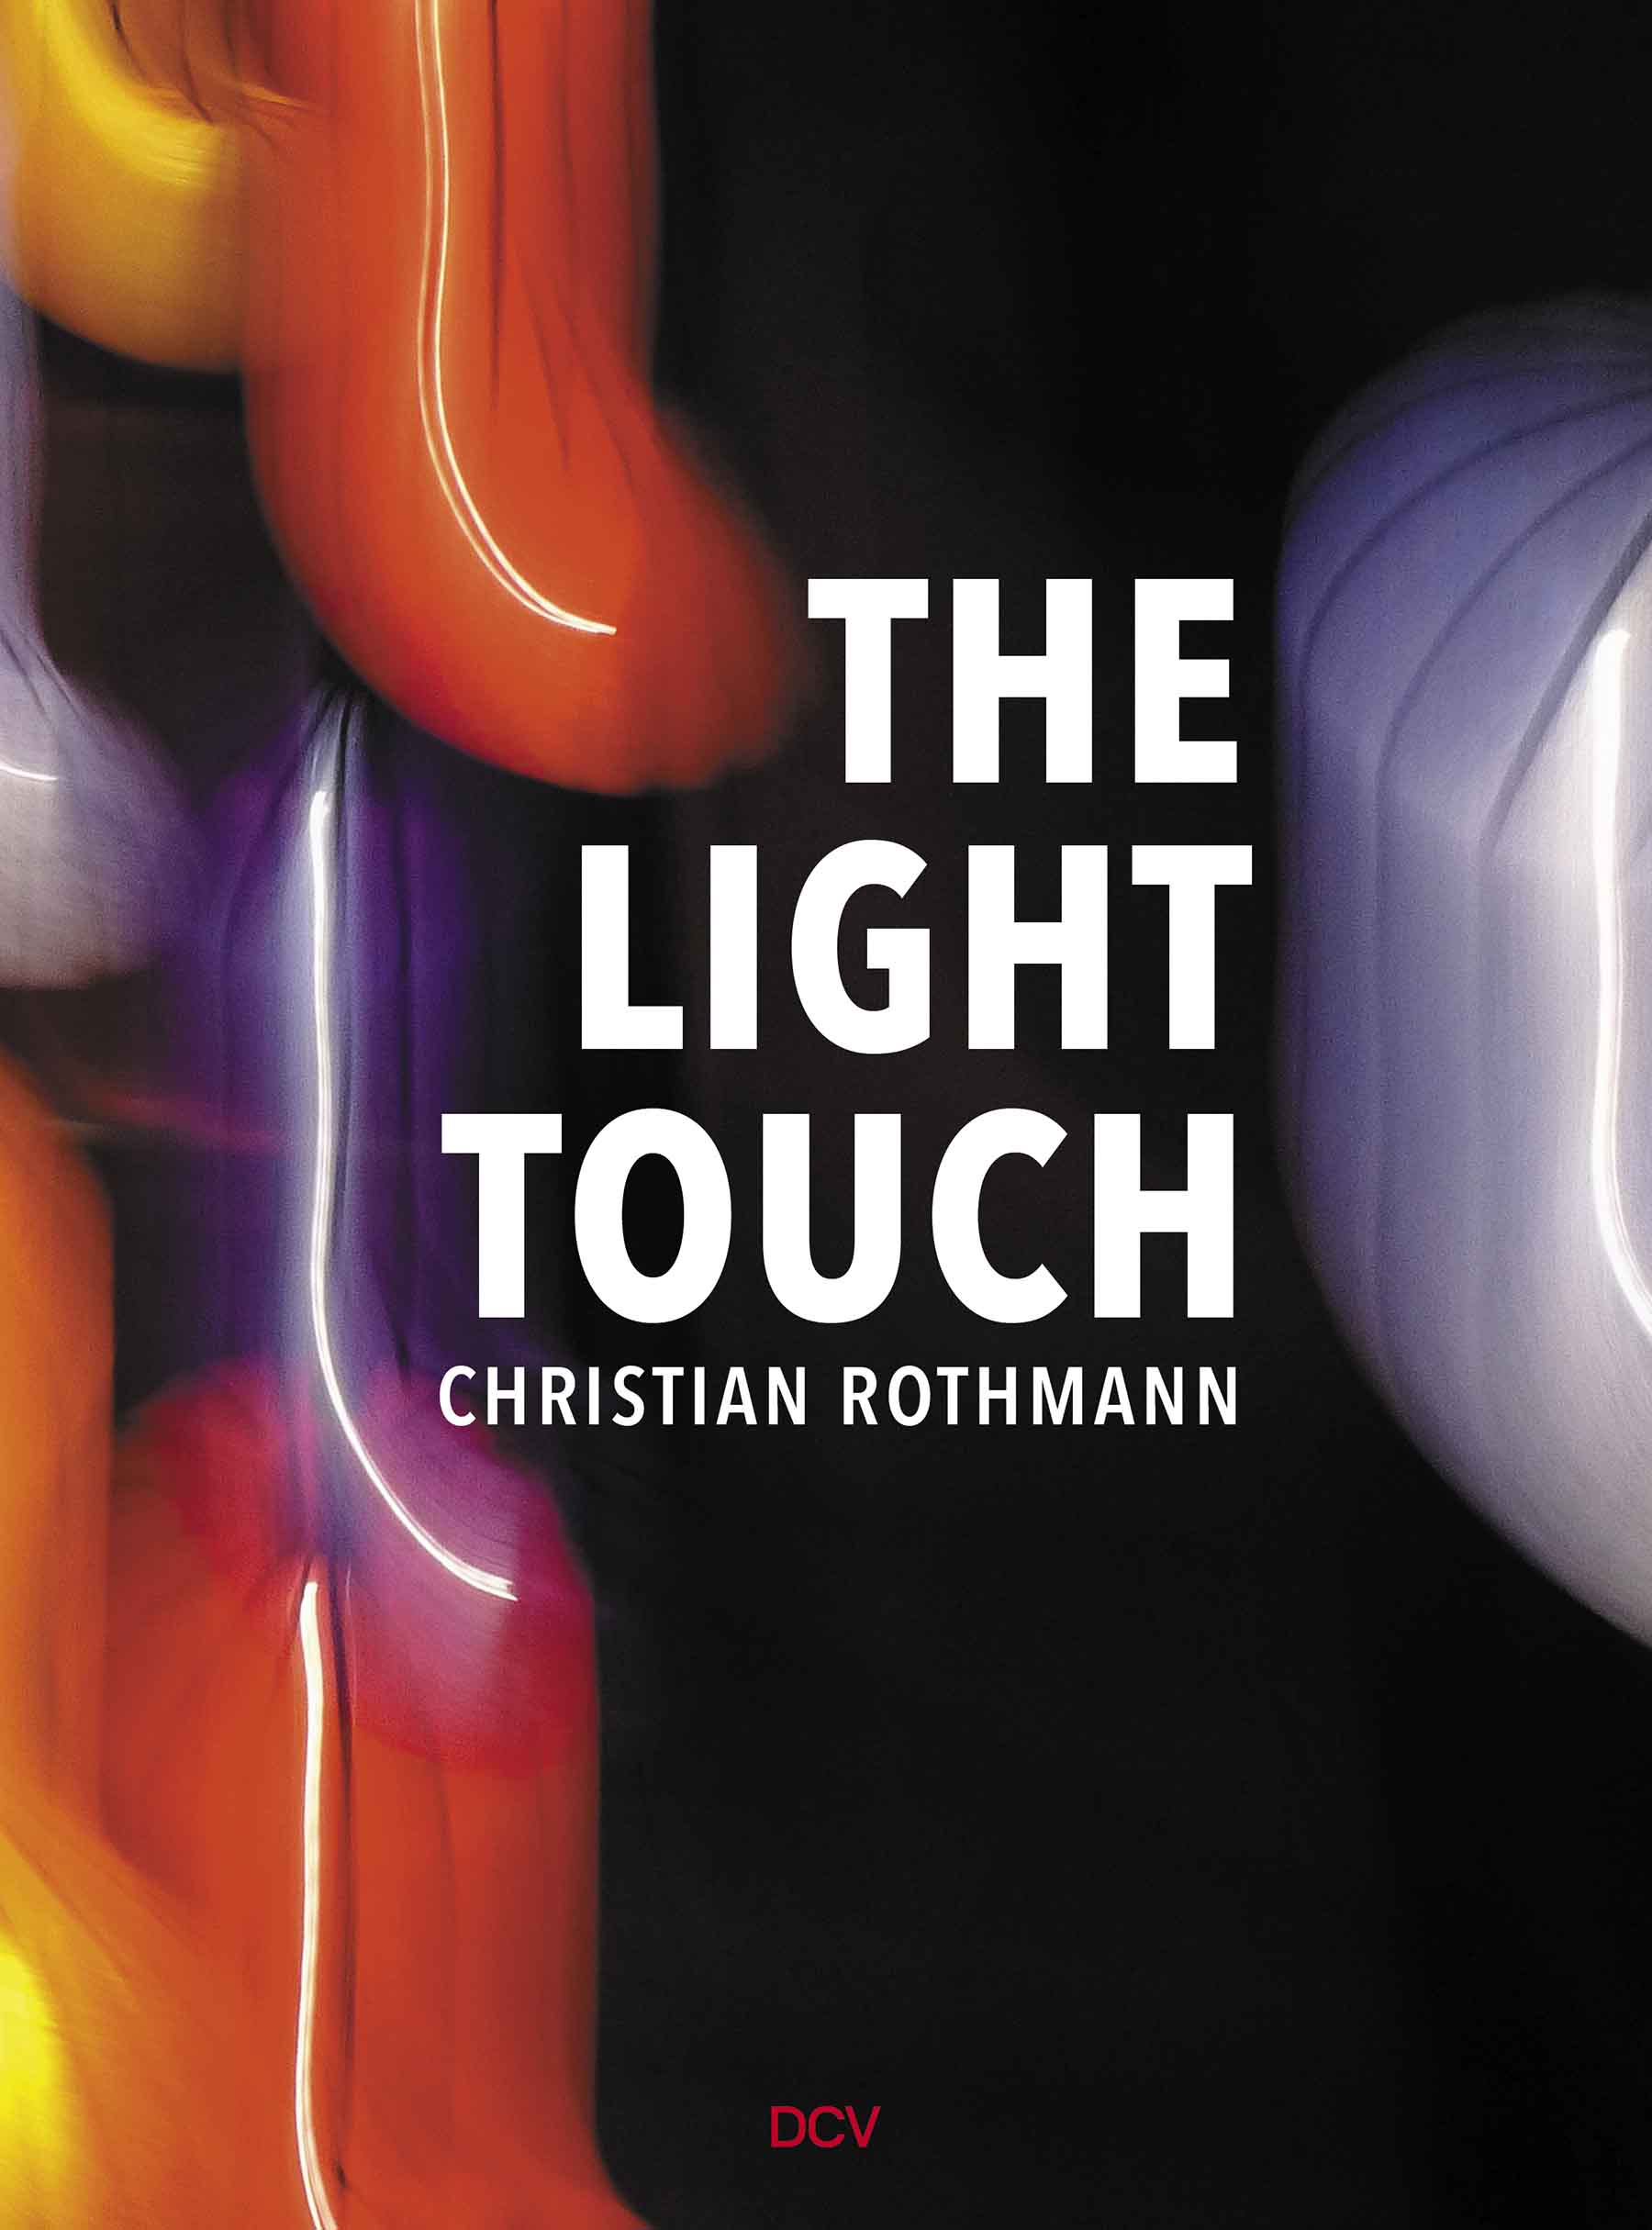 christian rothmann